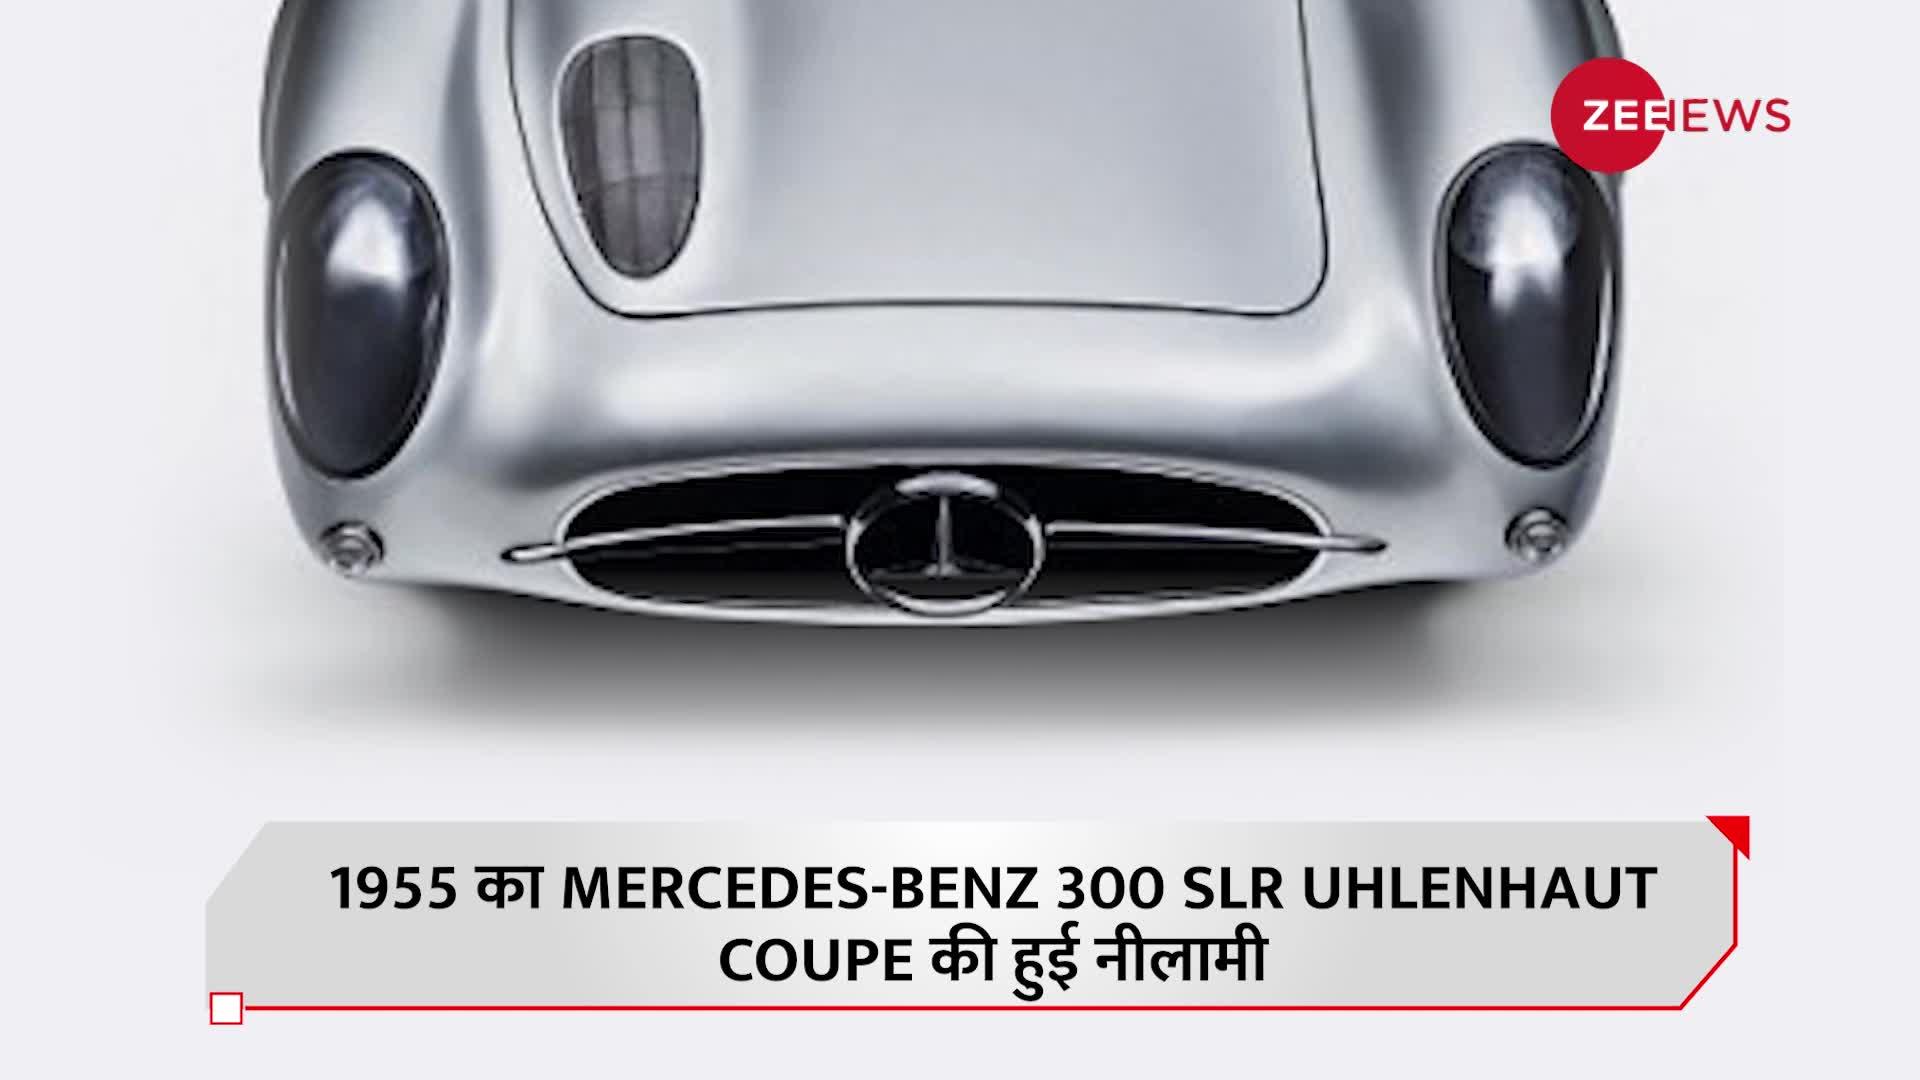 ये है दुनिया की सबसे महंगी कार, जो नीलामी में इतने हजार करोड़ रुपये में बिकी